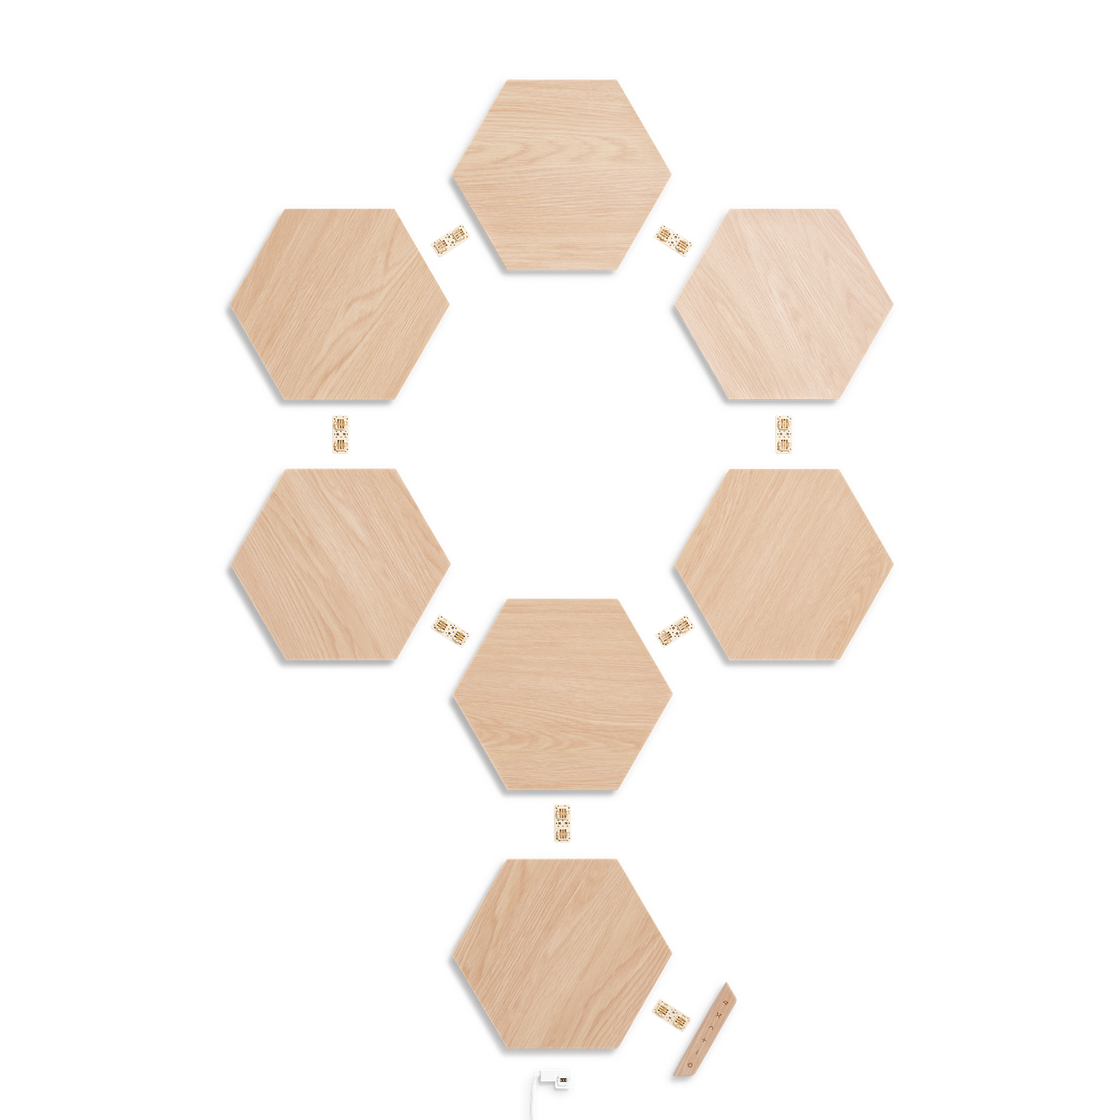 Nanoleaf Elements Hexagon Starter Kit